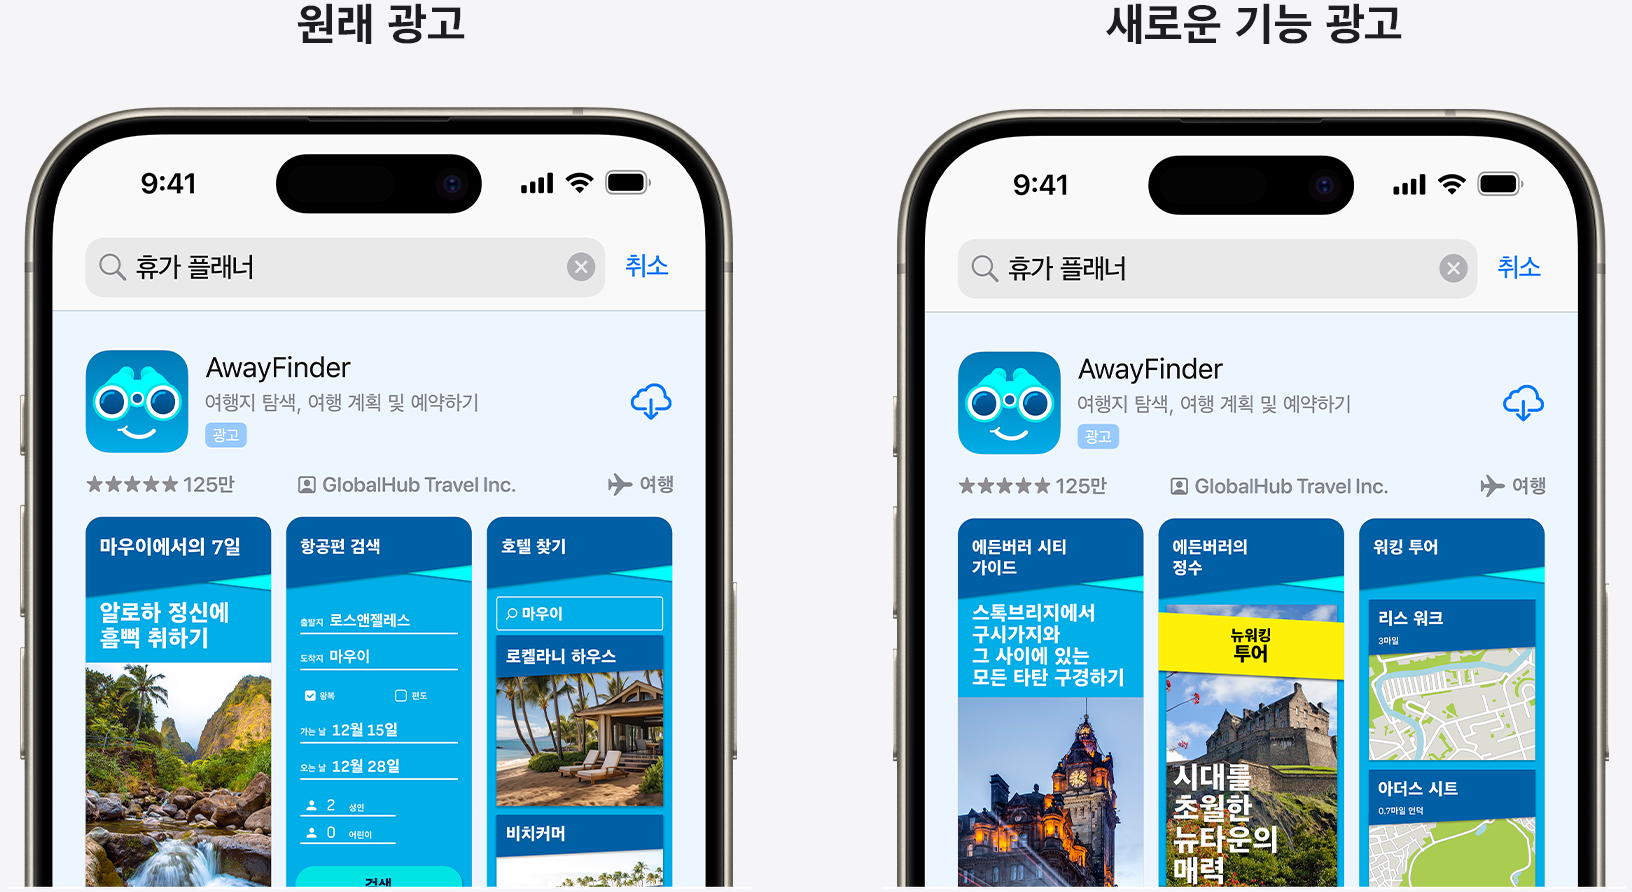 예제 앱 AwayFinder에 대한 원래 광고와 새로운 기능을 강조하는 광고를 나란히 놓고 비교합니다.